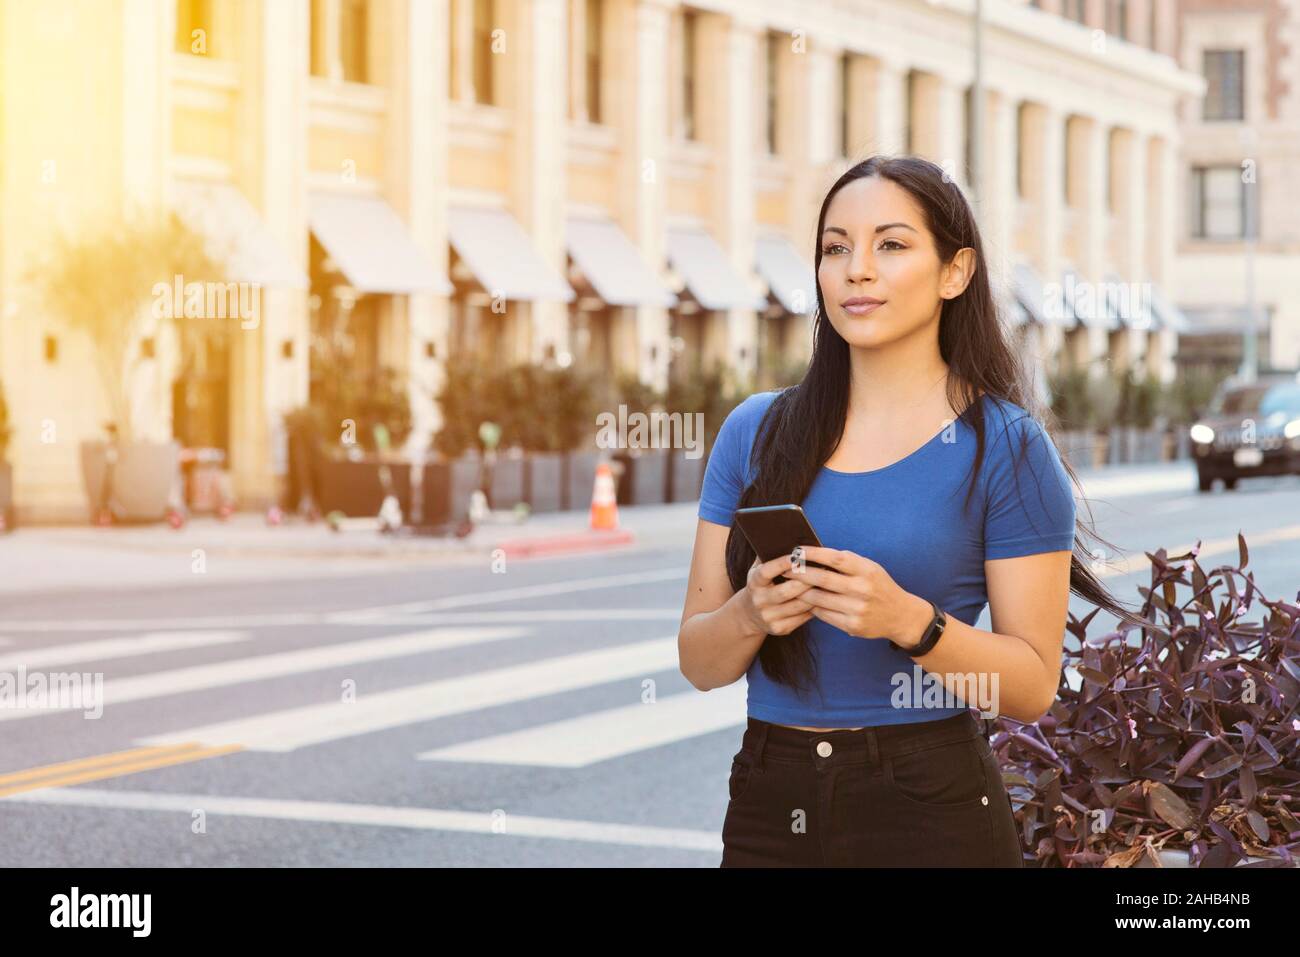 Jeune fille attirante attend une part en voiture en ville - Holding smart phone en attente sur le trottoir - Jour avec un éclairage chaleureux Banque D'Images